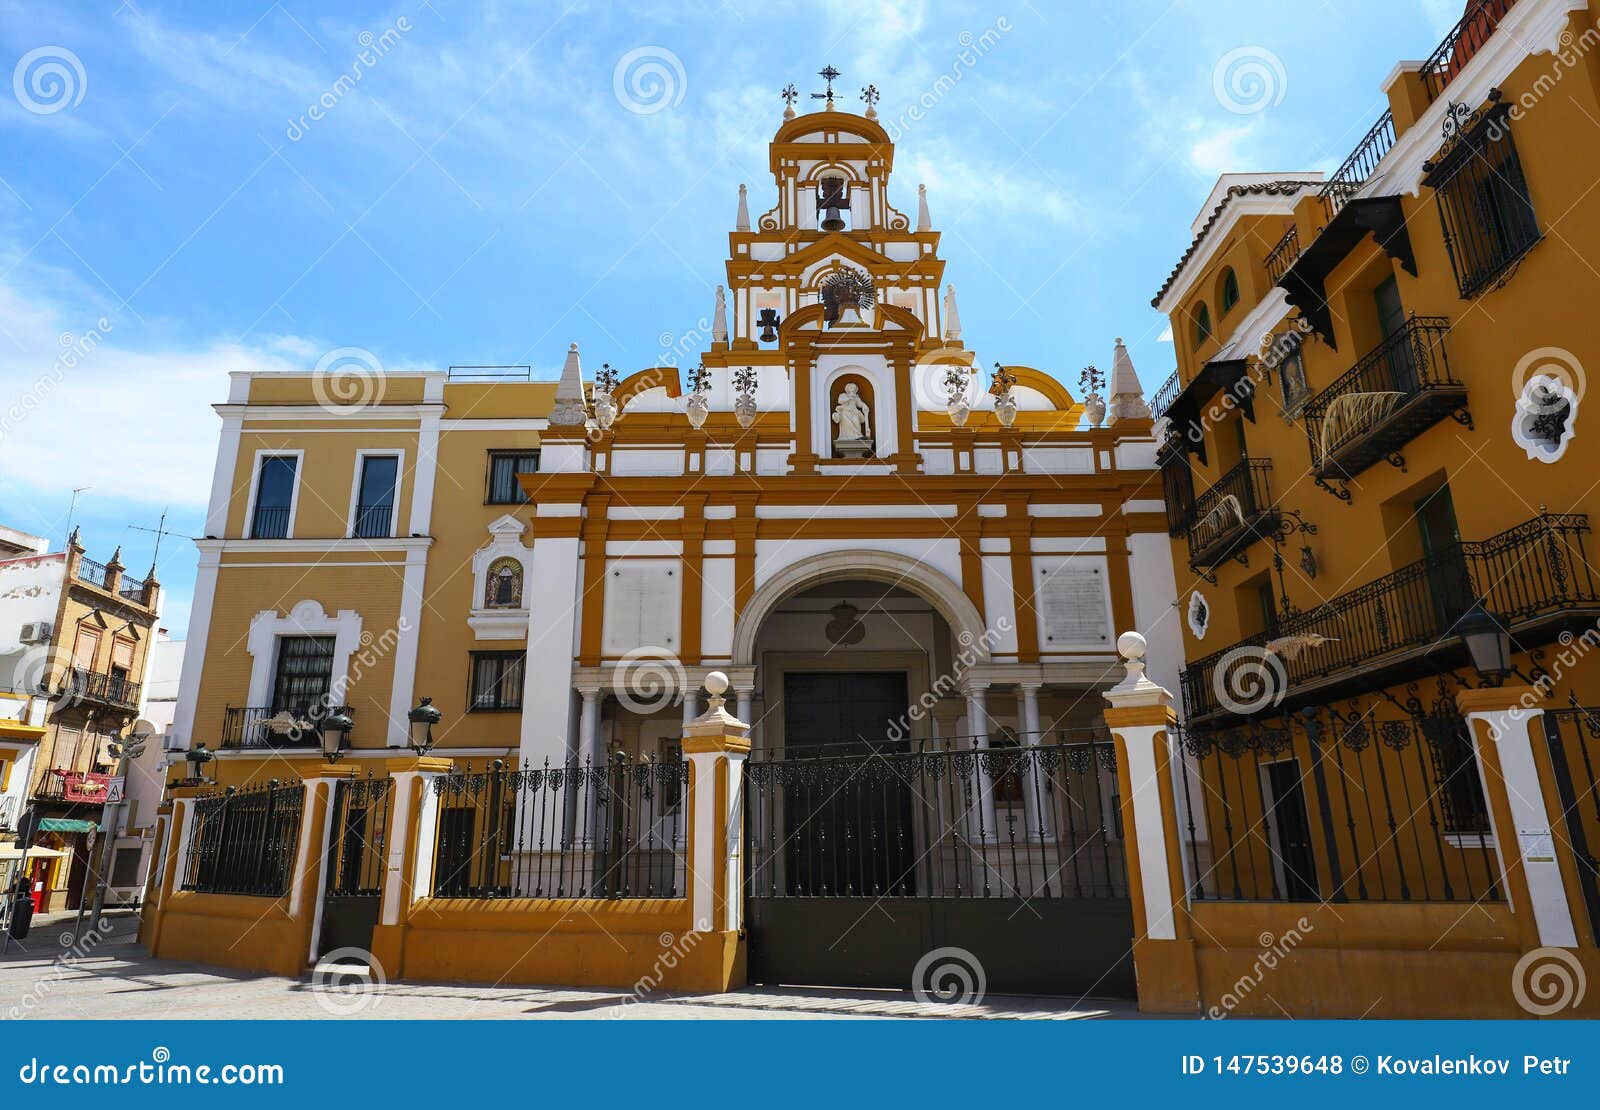 the basilica of santa maria de la esperanza macarena, also popularly known as the basilica of la macarena. seville.